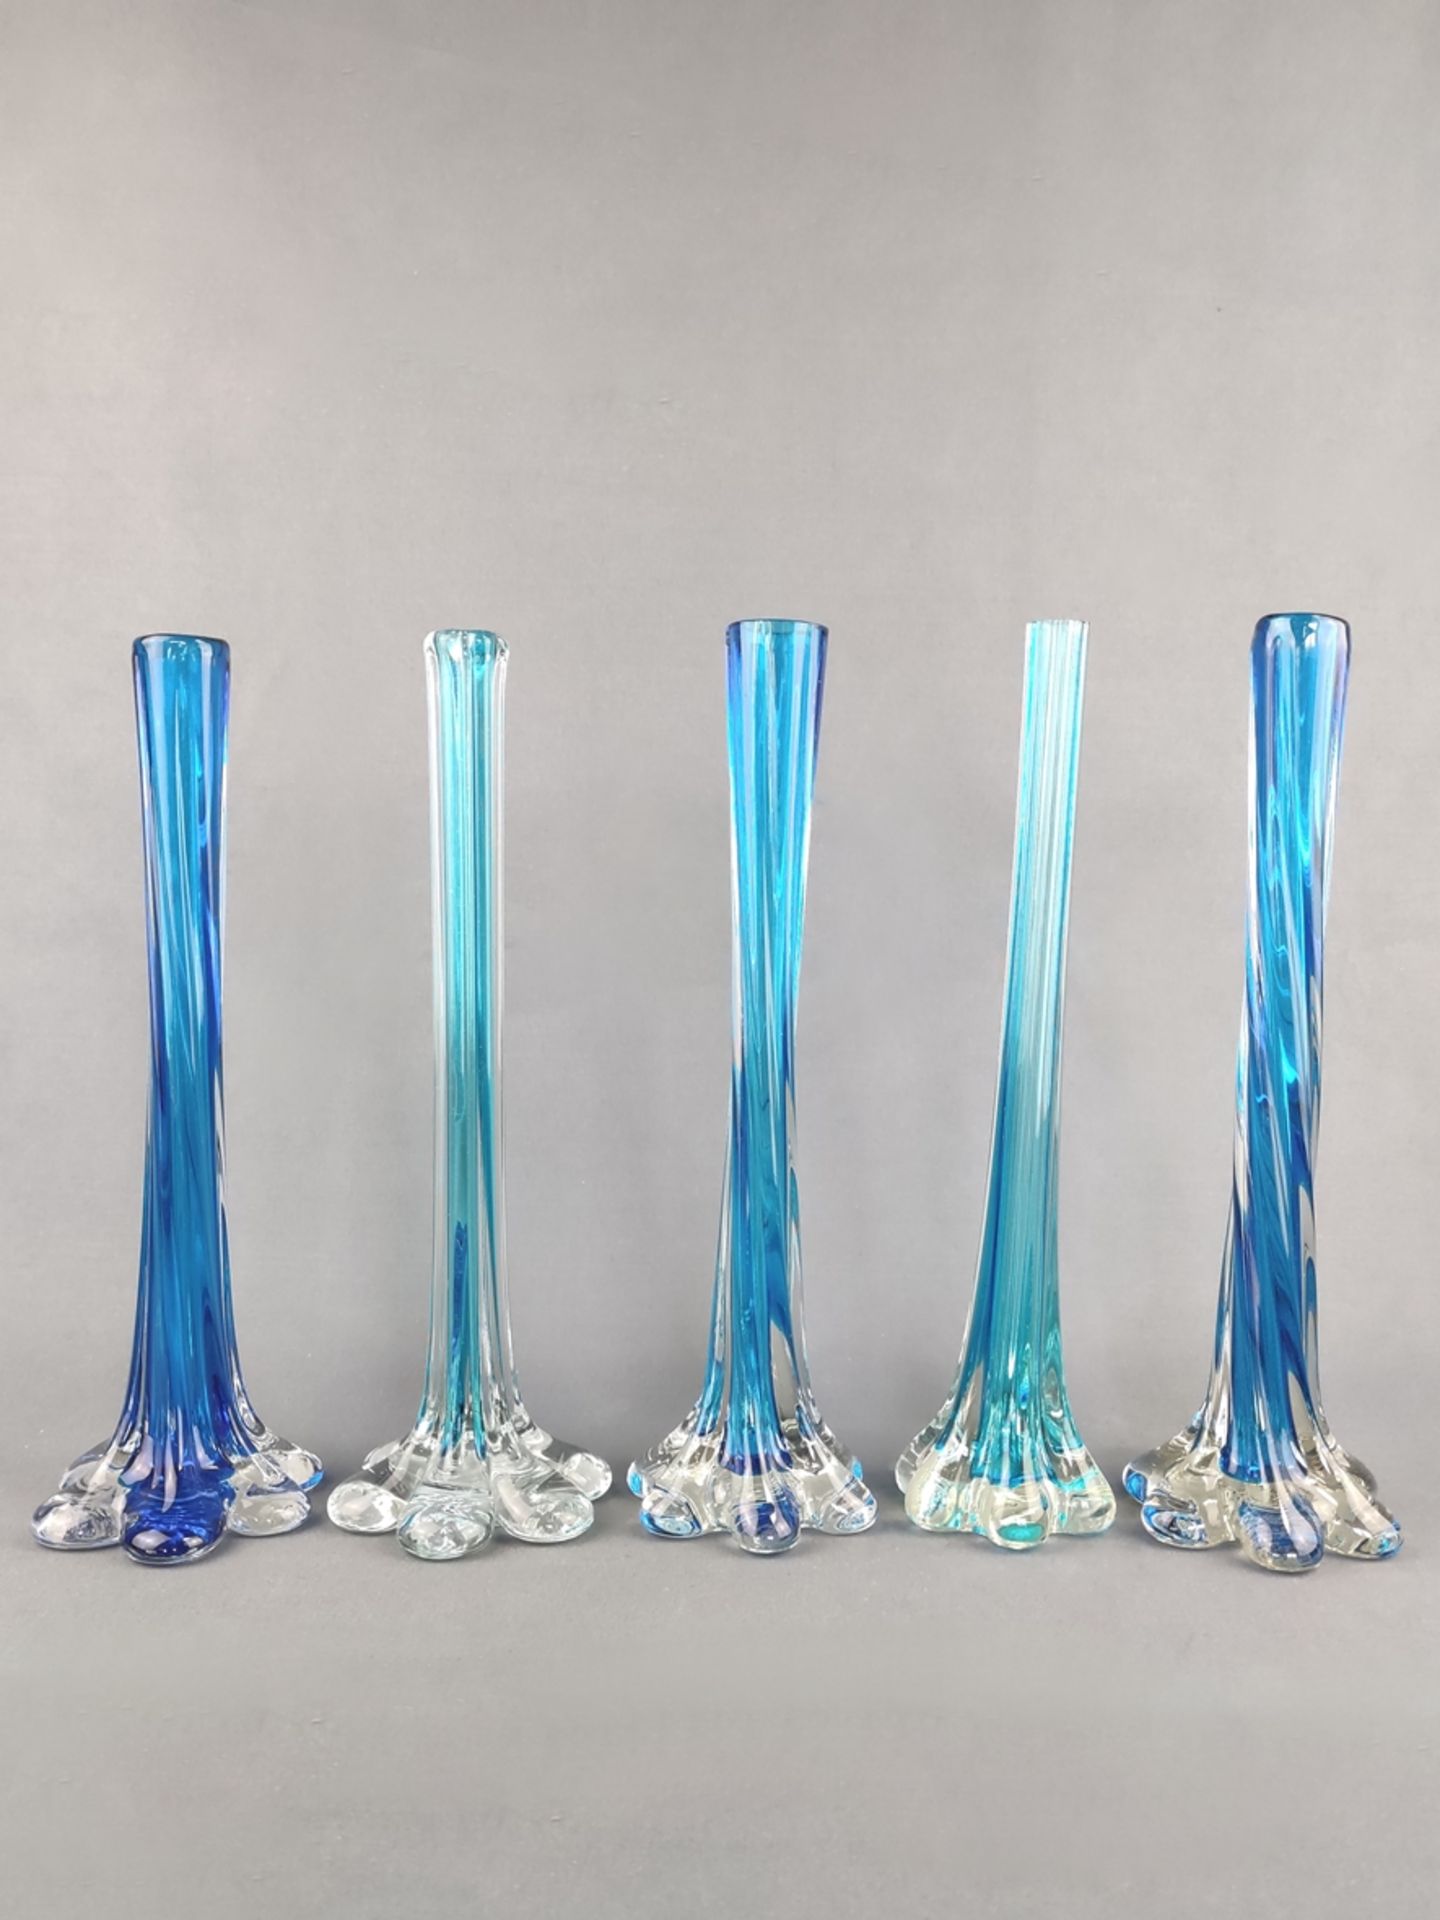 Fünf mundgeblasene Stängelvasen, drei dunkelblaue, breitere Vasen sowie zwei hellblaue, schmale Vas